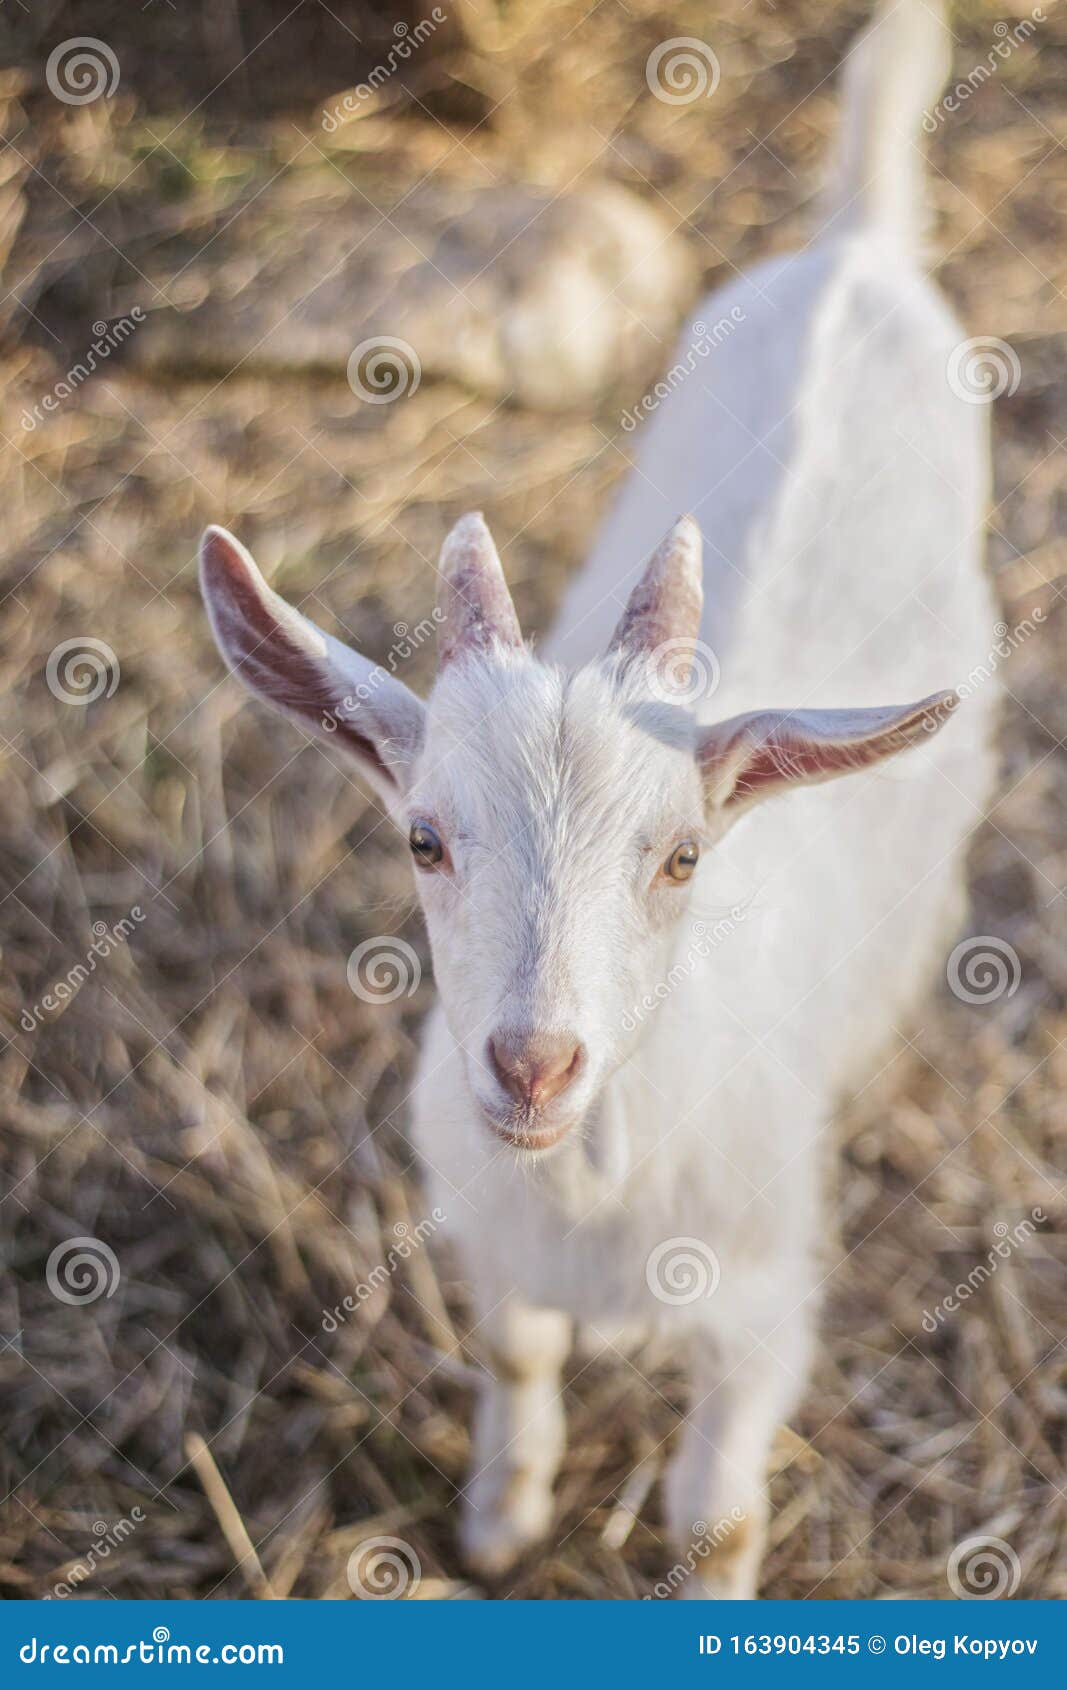 80 Free Goat Hair  Goat Images  Pixabay